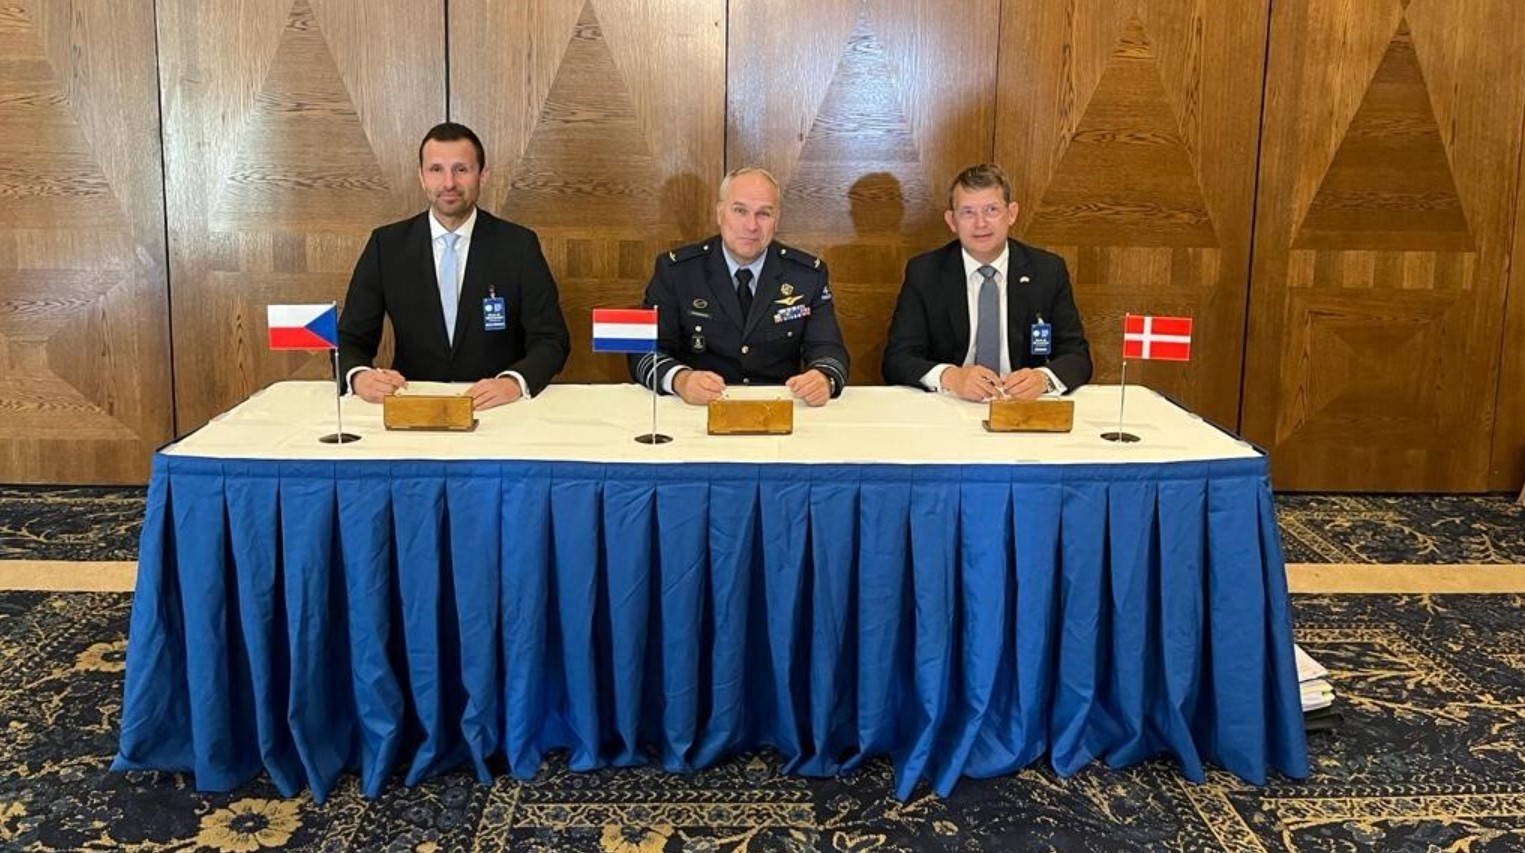 Міністри оборони Данії та Нідерландів, а також заступник міністра оборони Чехії Даніель Блажковец Міністерство оборони Чехії. Фото: Міноборони Чехії